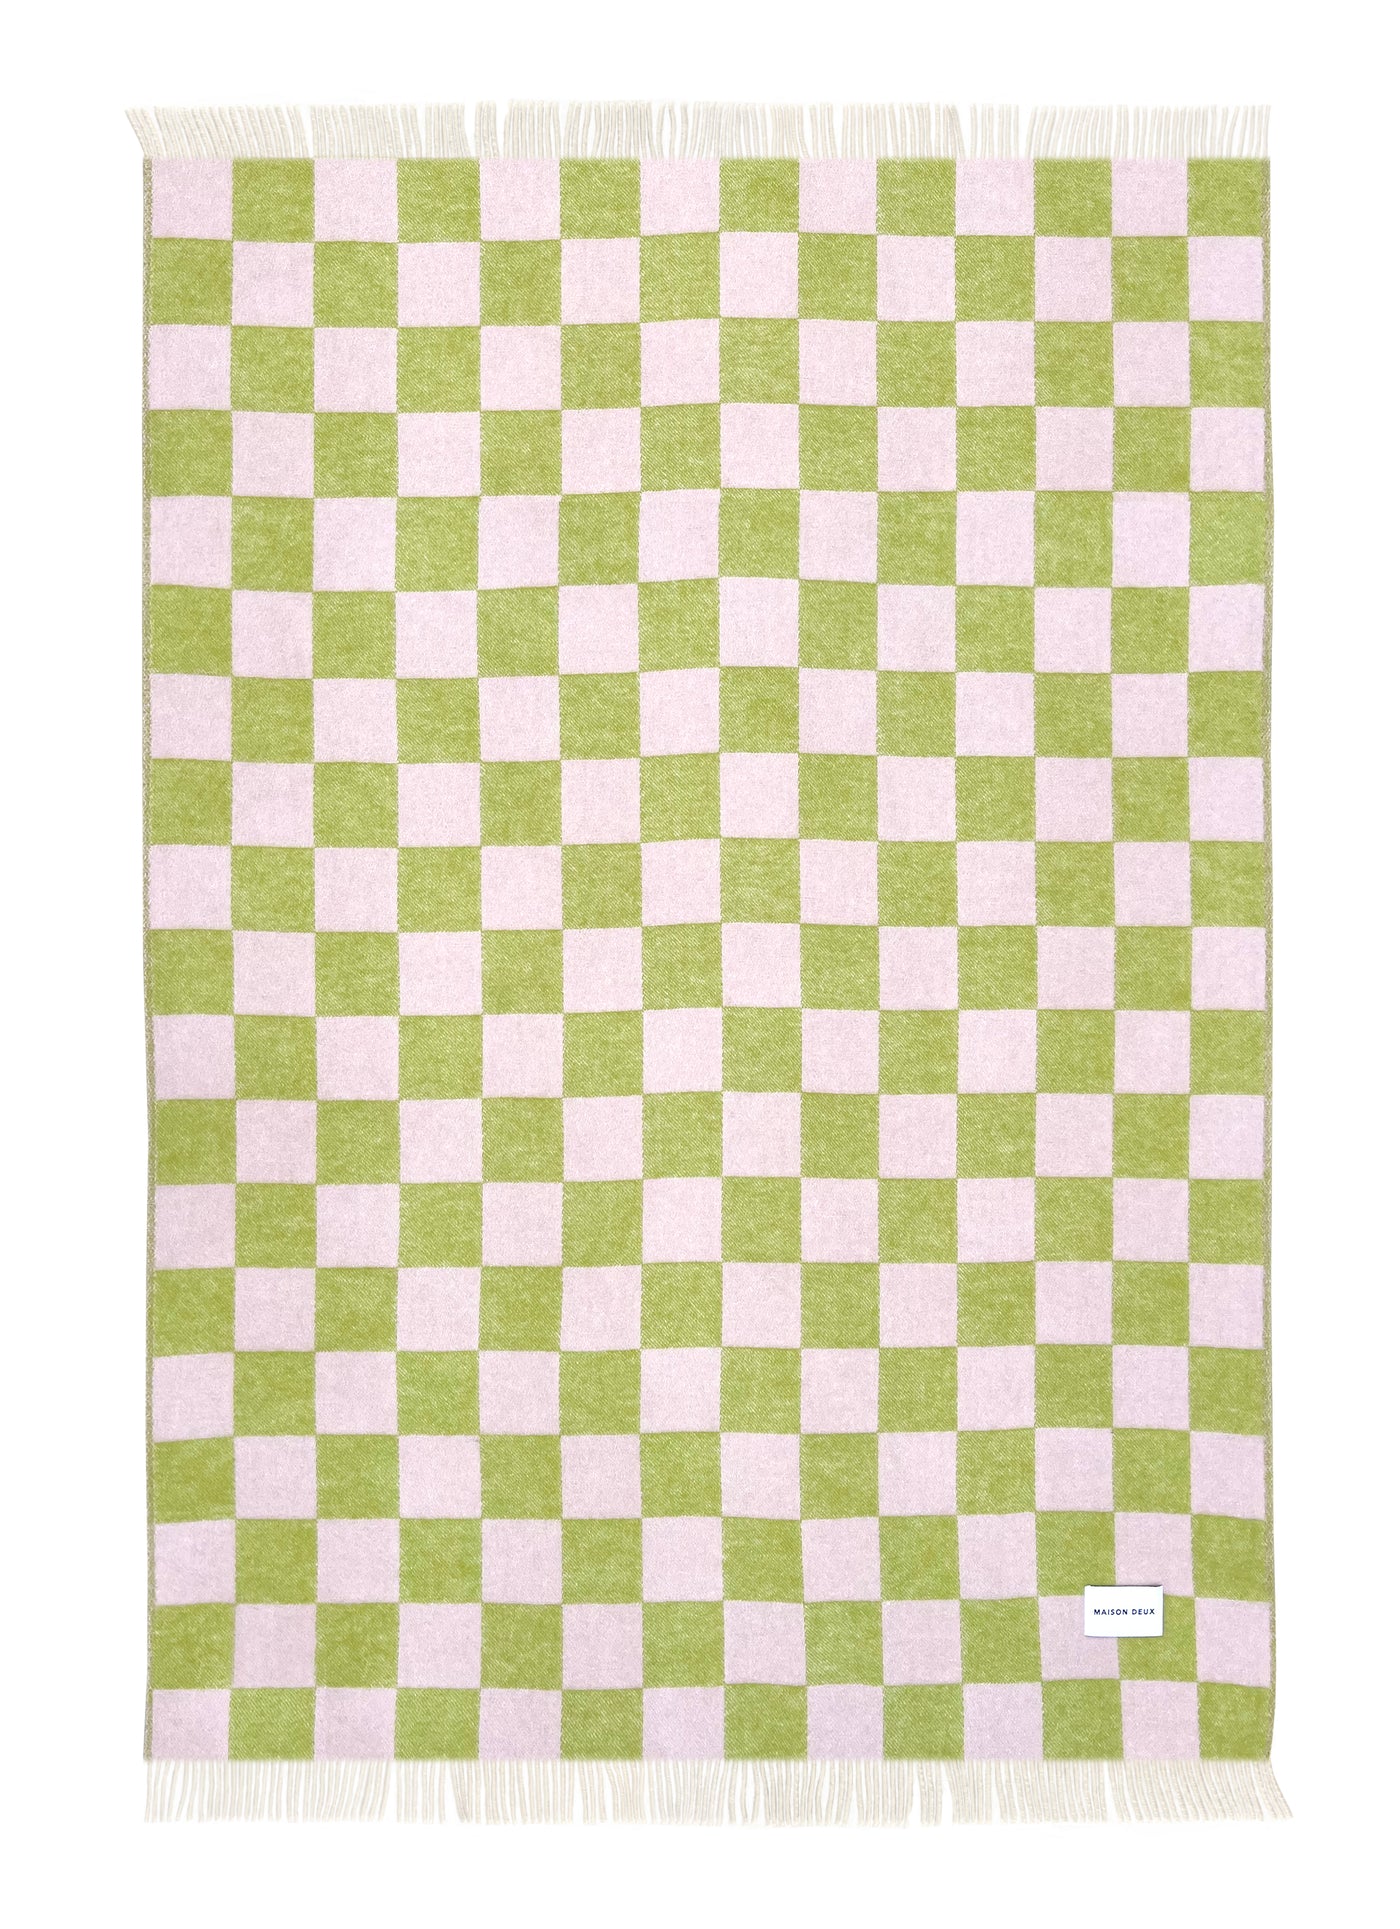 Maison Deux Schachbrettmuster-Decke kariert kiwi/pink ca. 130x200cm